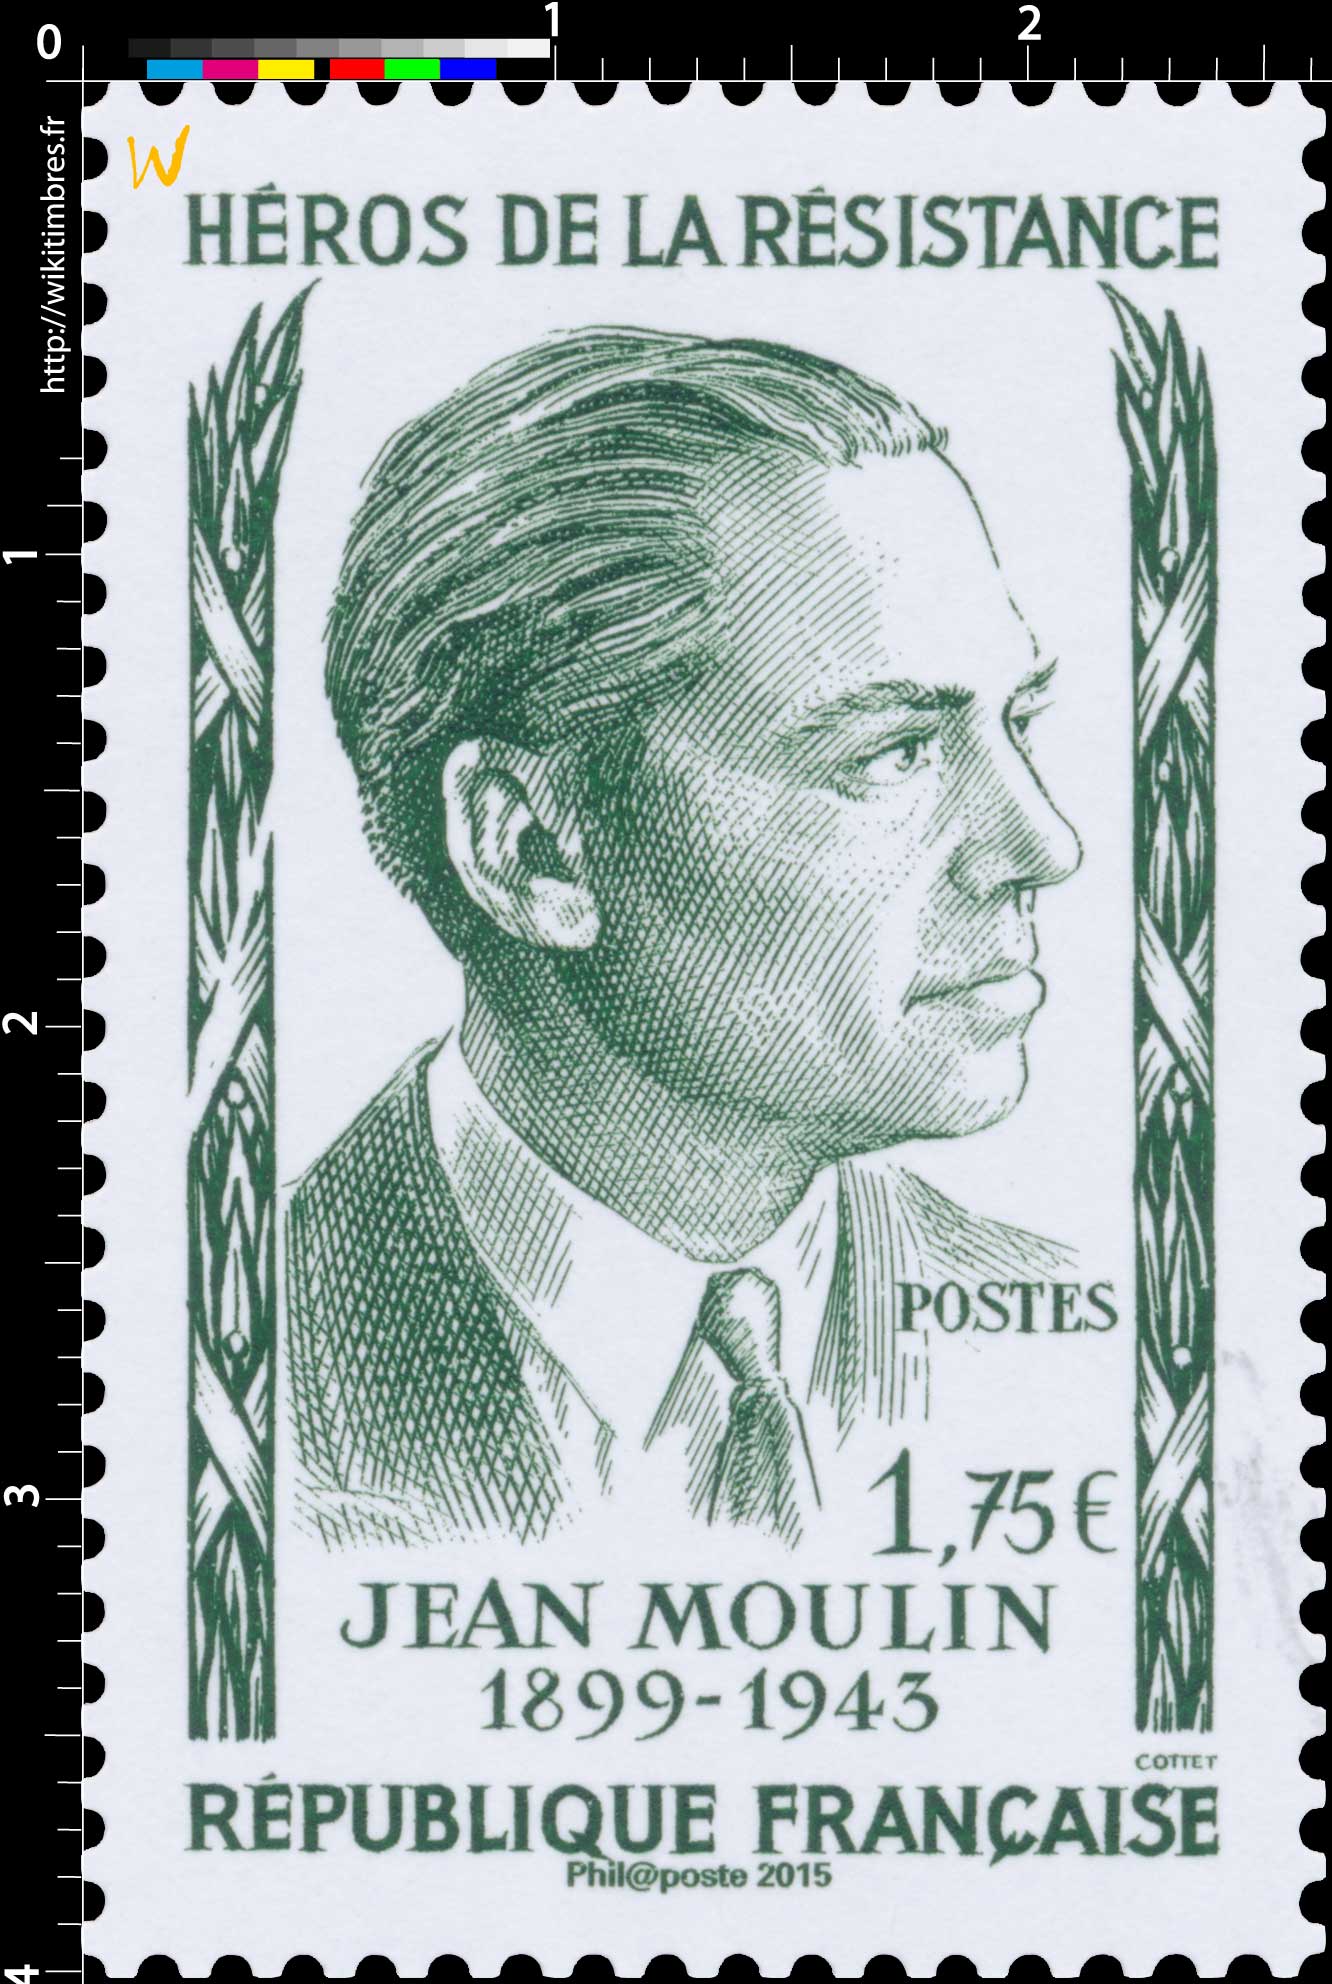 2015 Héros de la résistance Jean Moulin 1899-1943